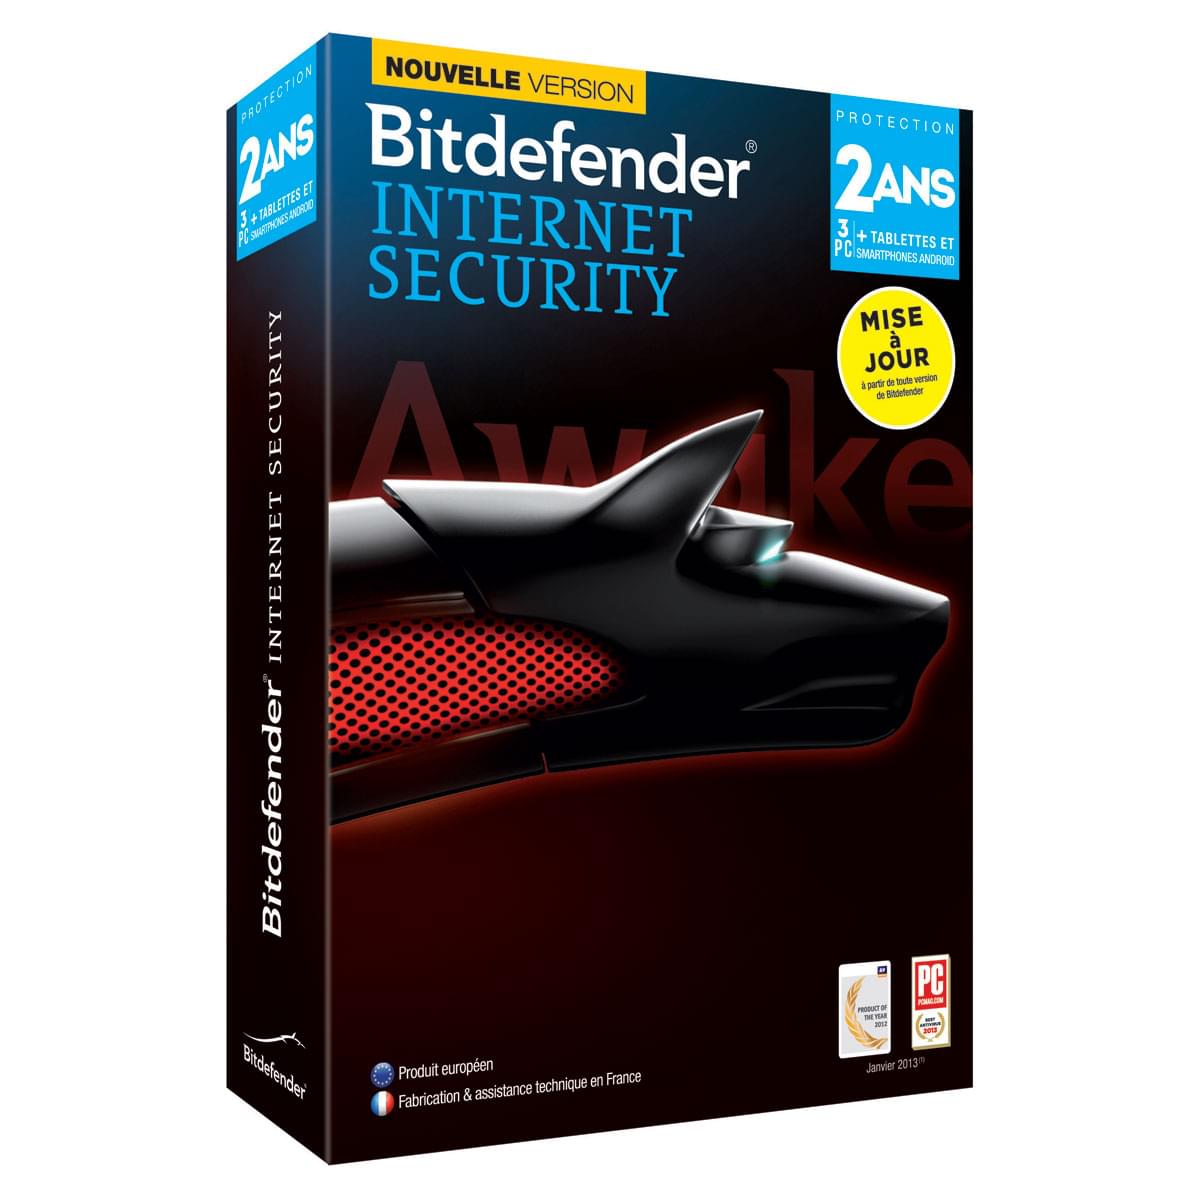 Bitdefender MAJ Internet Security 2014 - 2 Ans / 3 Postes - Logiciel sécurité - 0